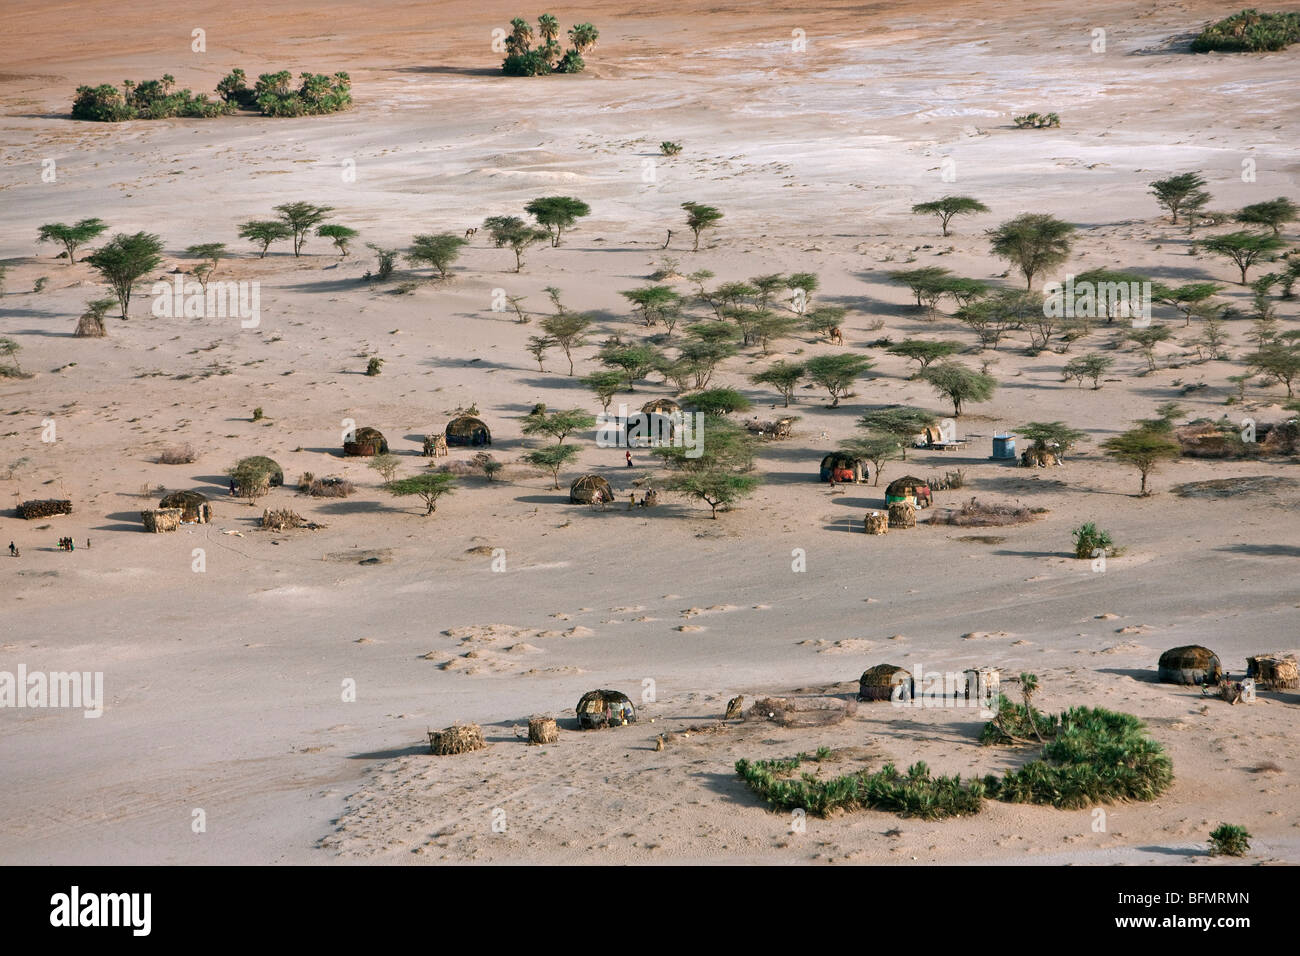 Case Gabbra presso la North Horr, un'oasi in semi-terreno desertico al confine nord del deserto Chalbi. Foto Stock